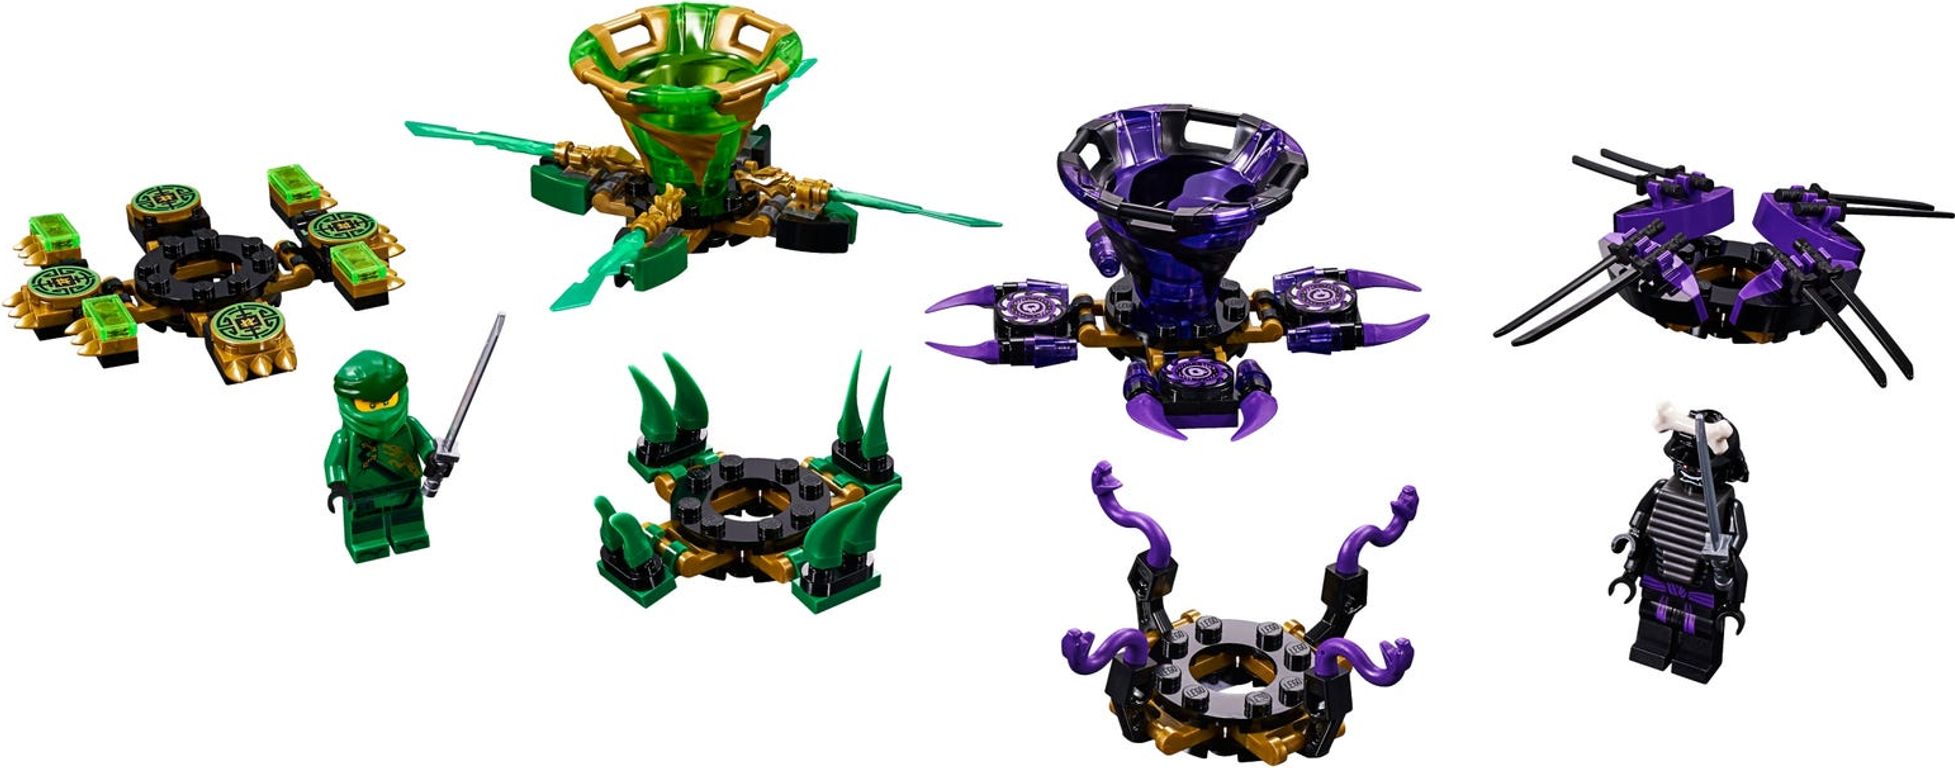 LEGO® Ninjago Spinjitzu Lloyd vs. Garmadon partes